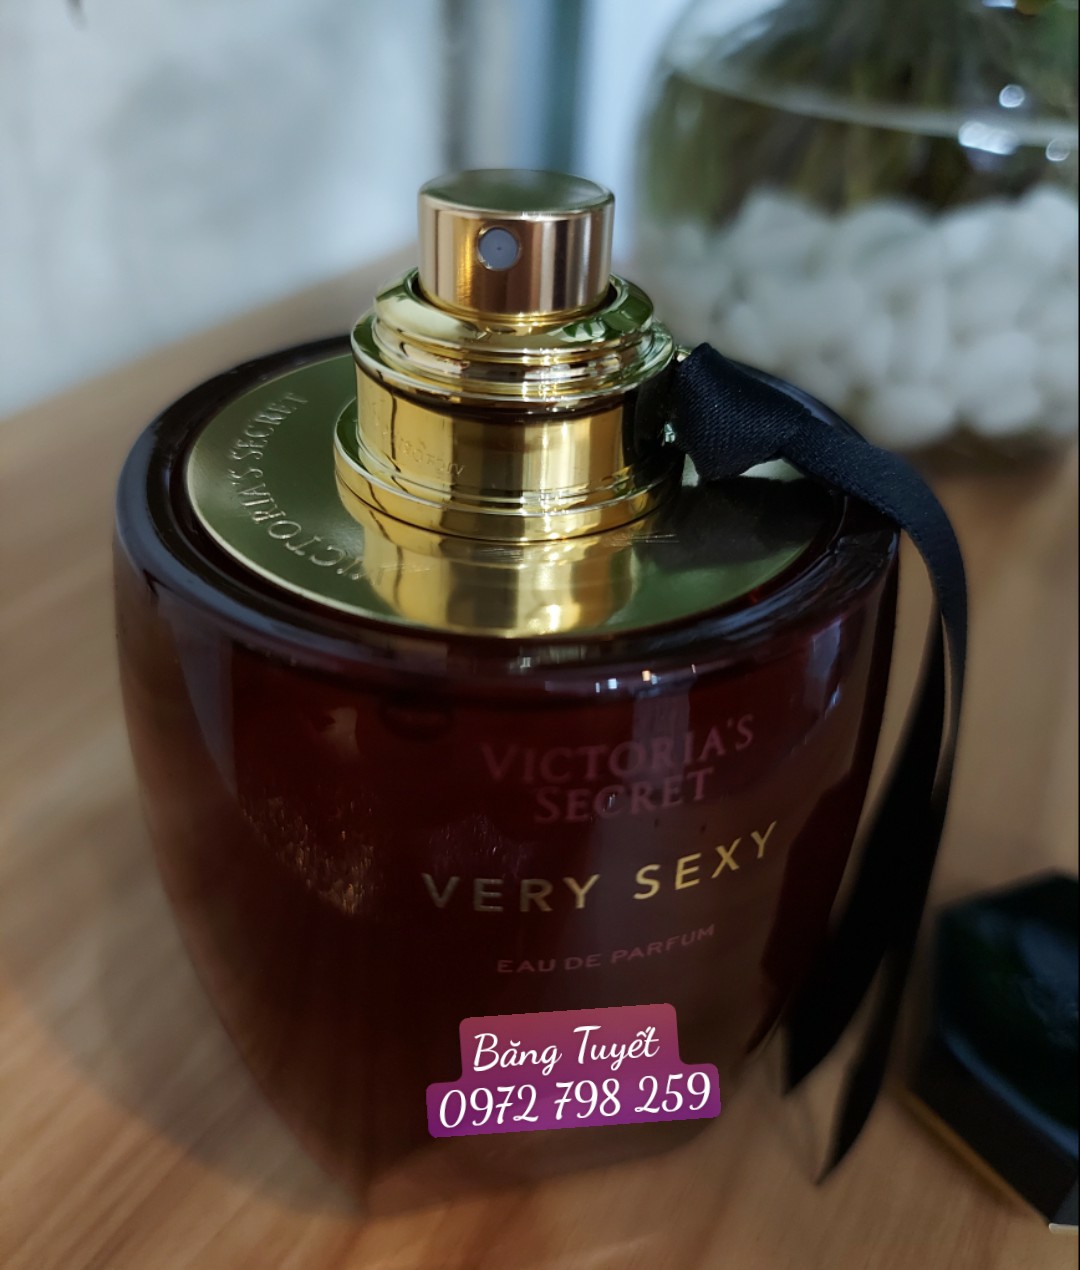 Nước hoa nữ VERY SEXY Victoria's Secret Perfume 100ml MỸ - Ngọt Ngào, Quyến Rũ